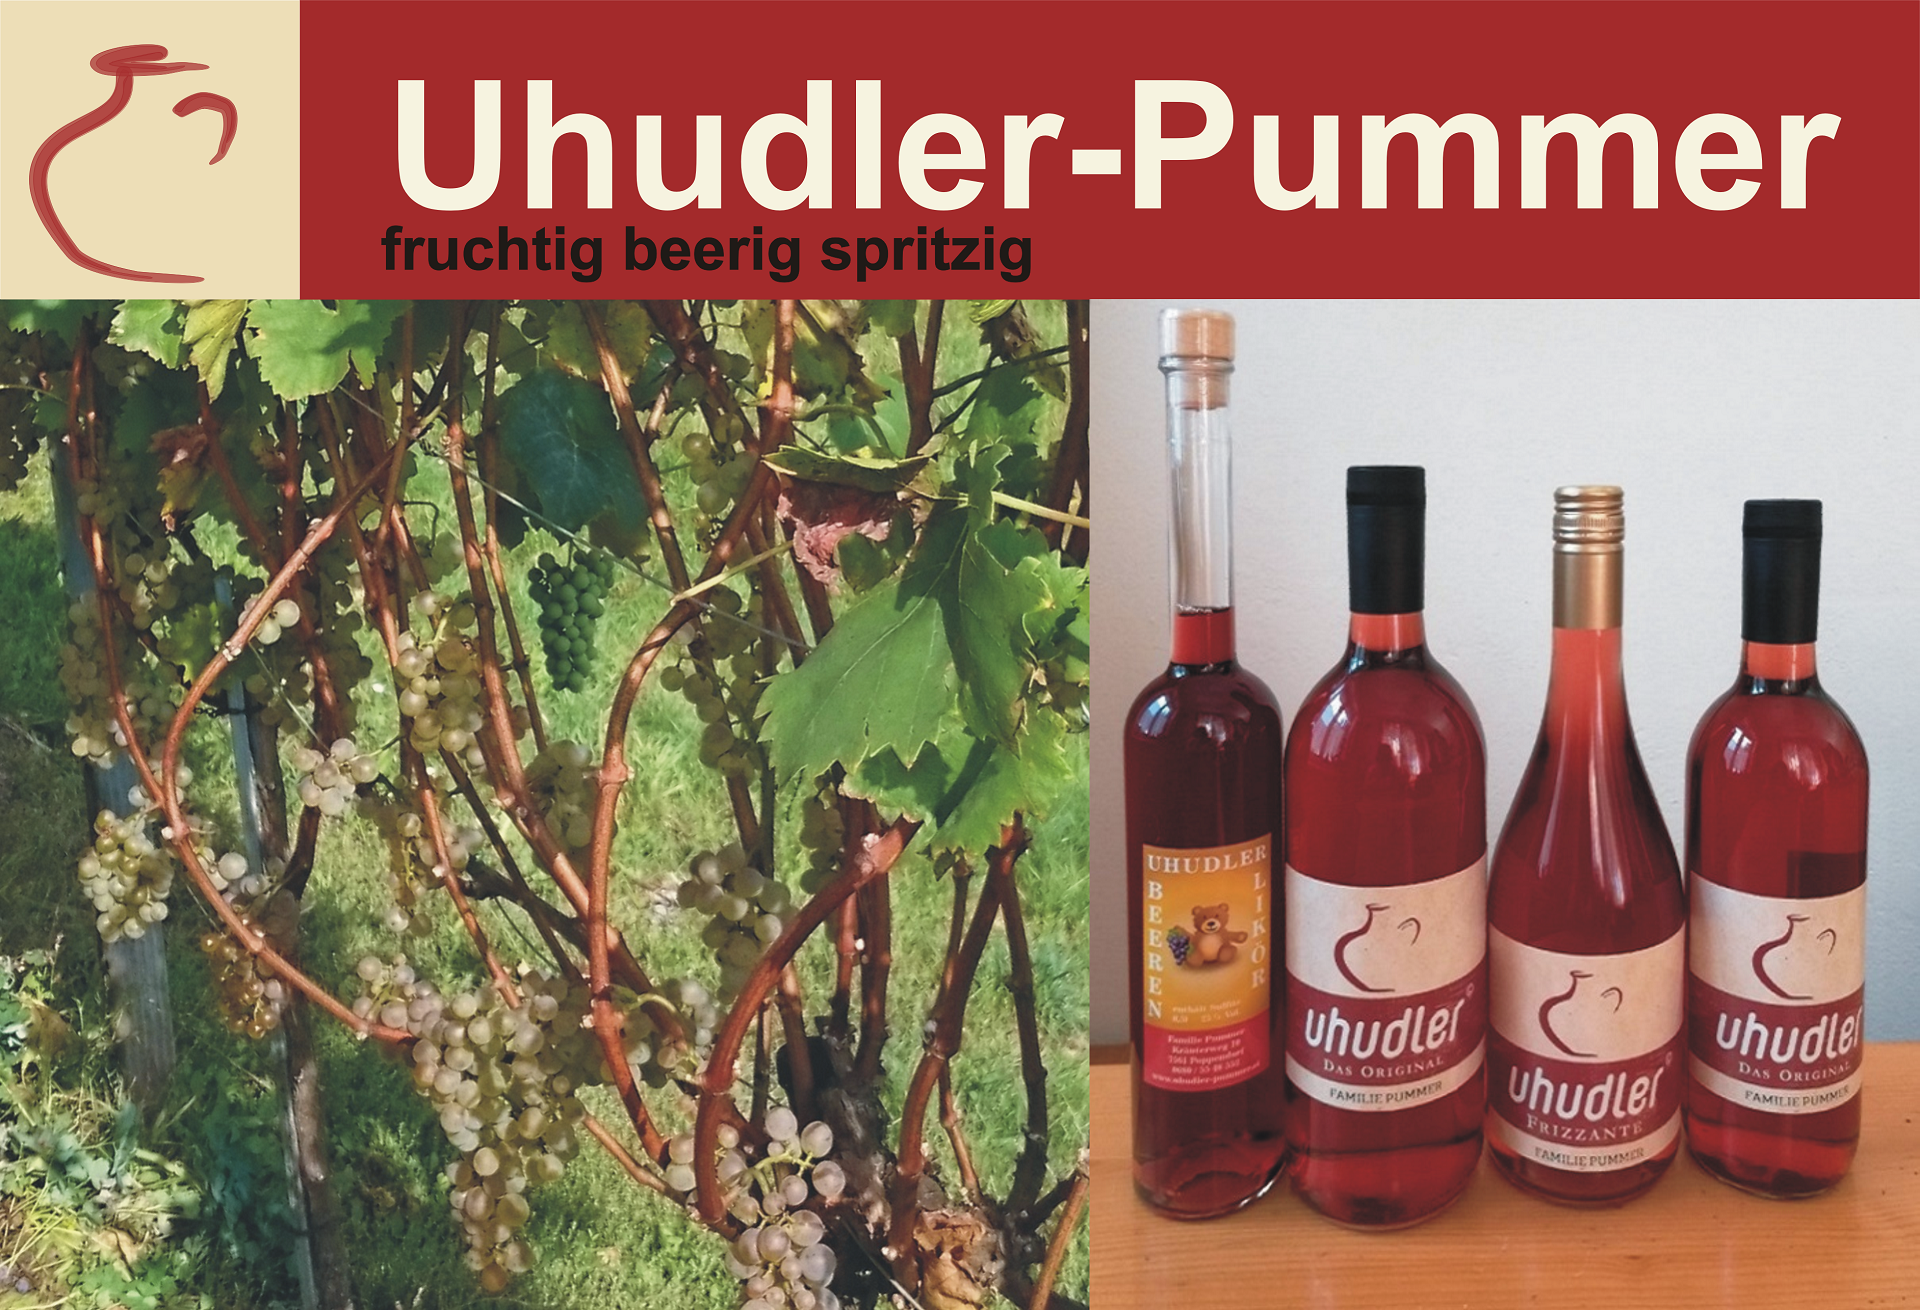 uhudler-kaufen-uhudler-shop-uhudler-pummer-3